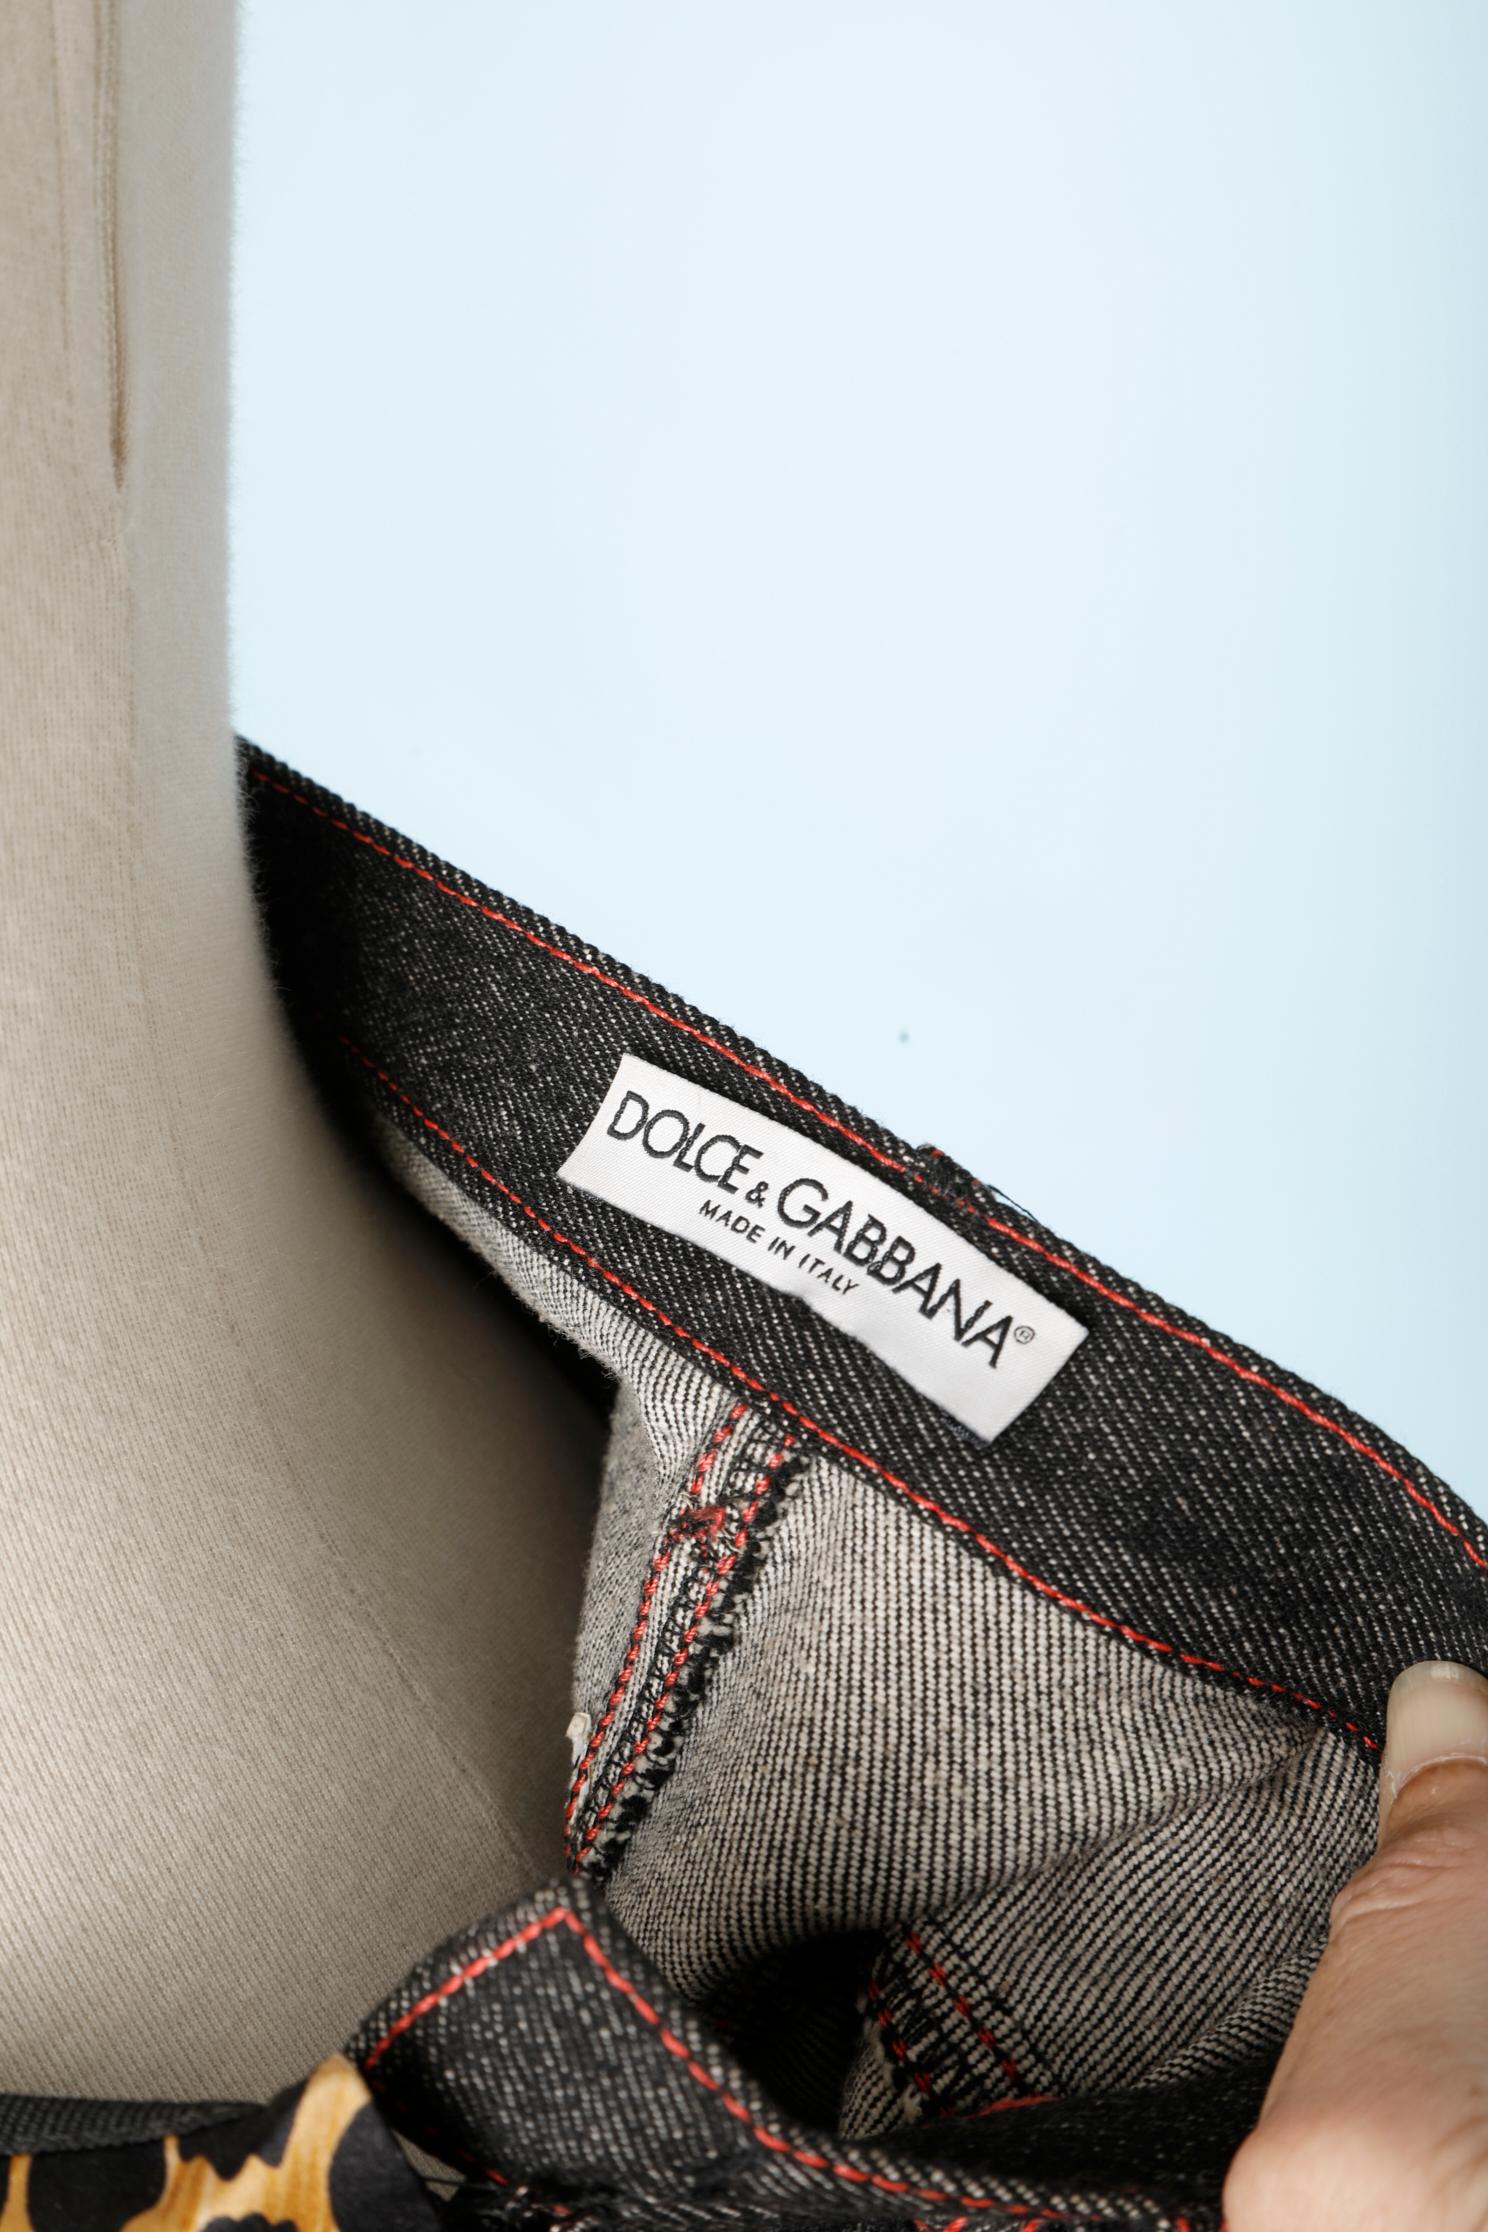 Brown Dolce & Gabbana skirt half denim half leopard printed jersey with side slit For Sale